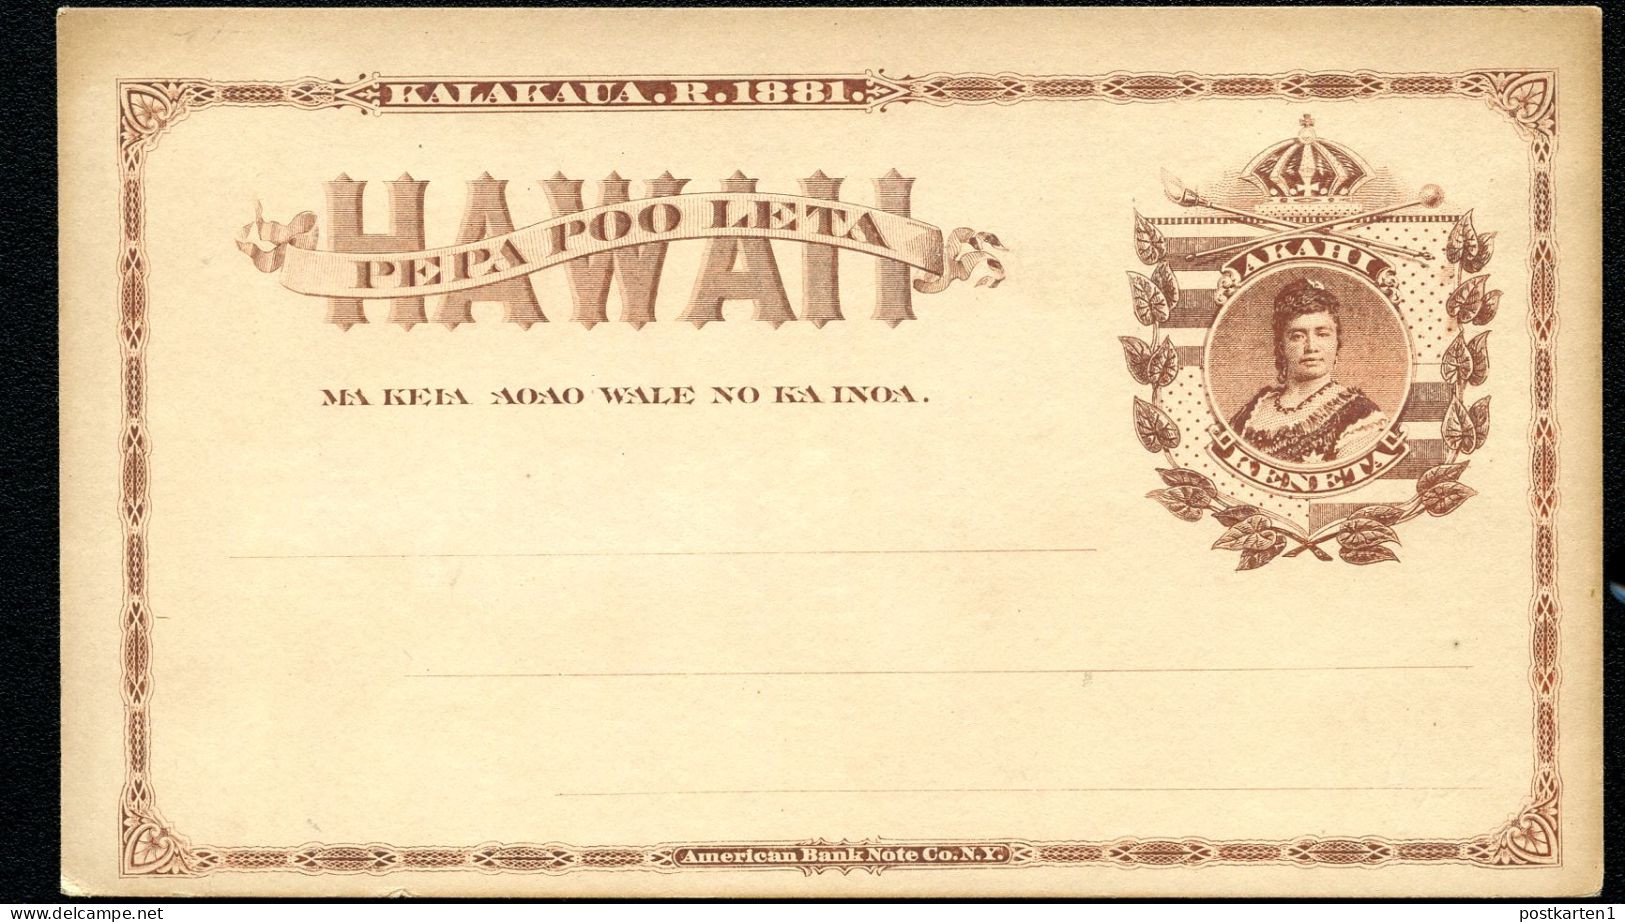 Hawaii Postal Card UX1 Gill Type5 Mint Xf 1882 - Hawaii